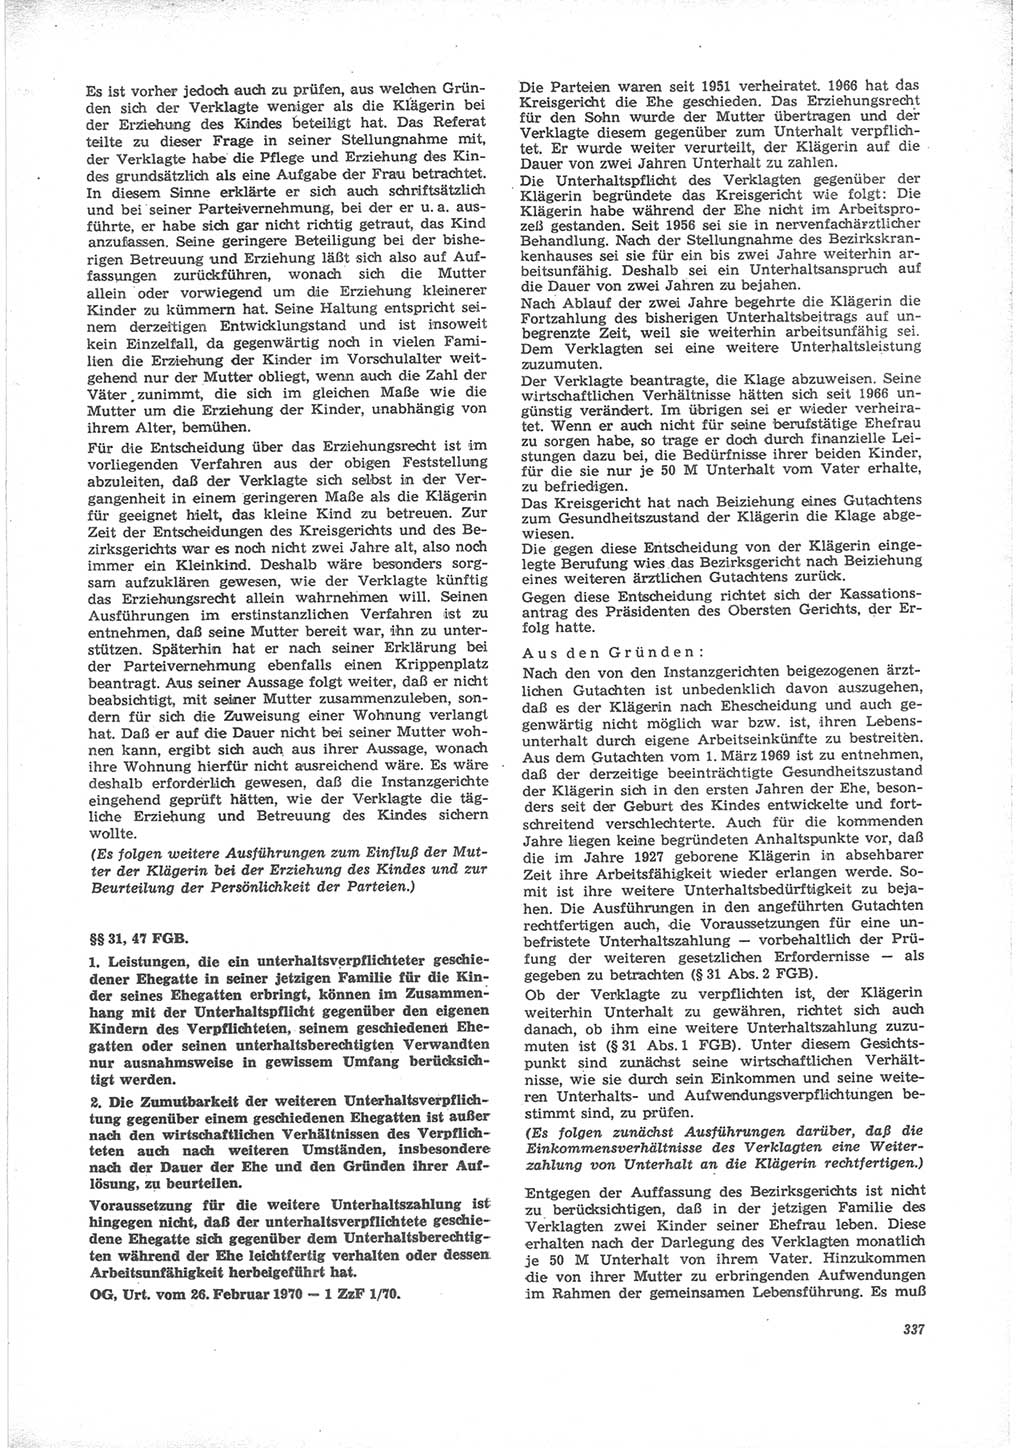 Neue Justiz (NJ), Zeitschrift für Recht und Rechtswissenschaft [Deutsche Demokratische Republik (DDR)], 24. Jahrgang 1970, Seite 337 (NJ DDR 1970, S. 337)